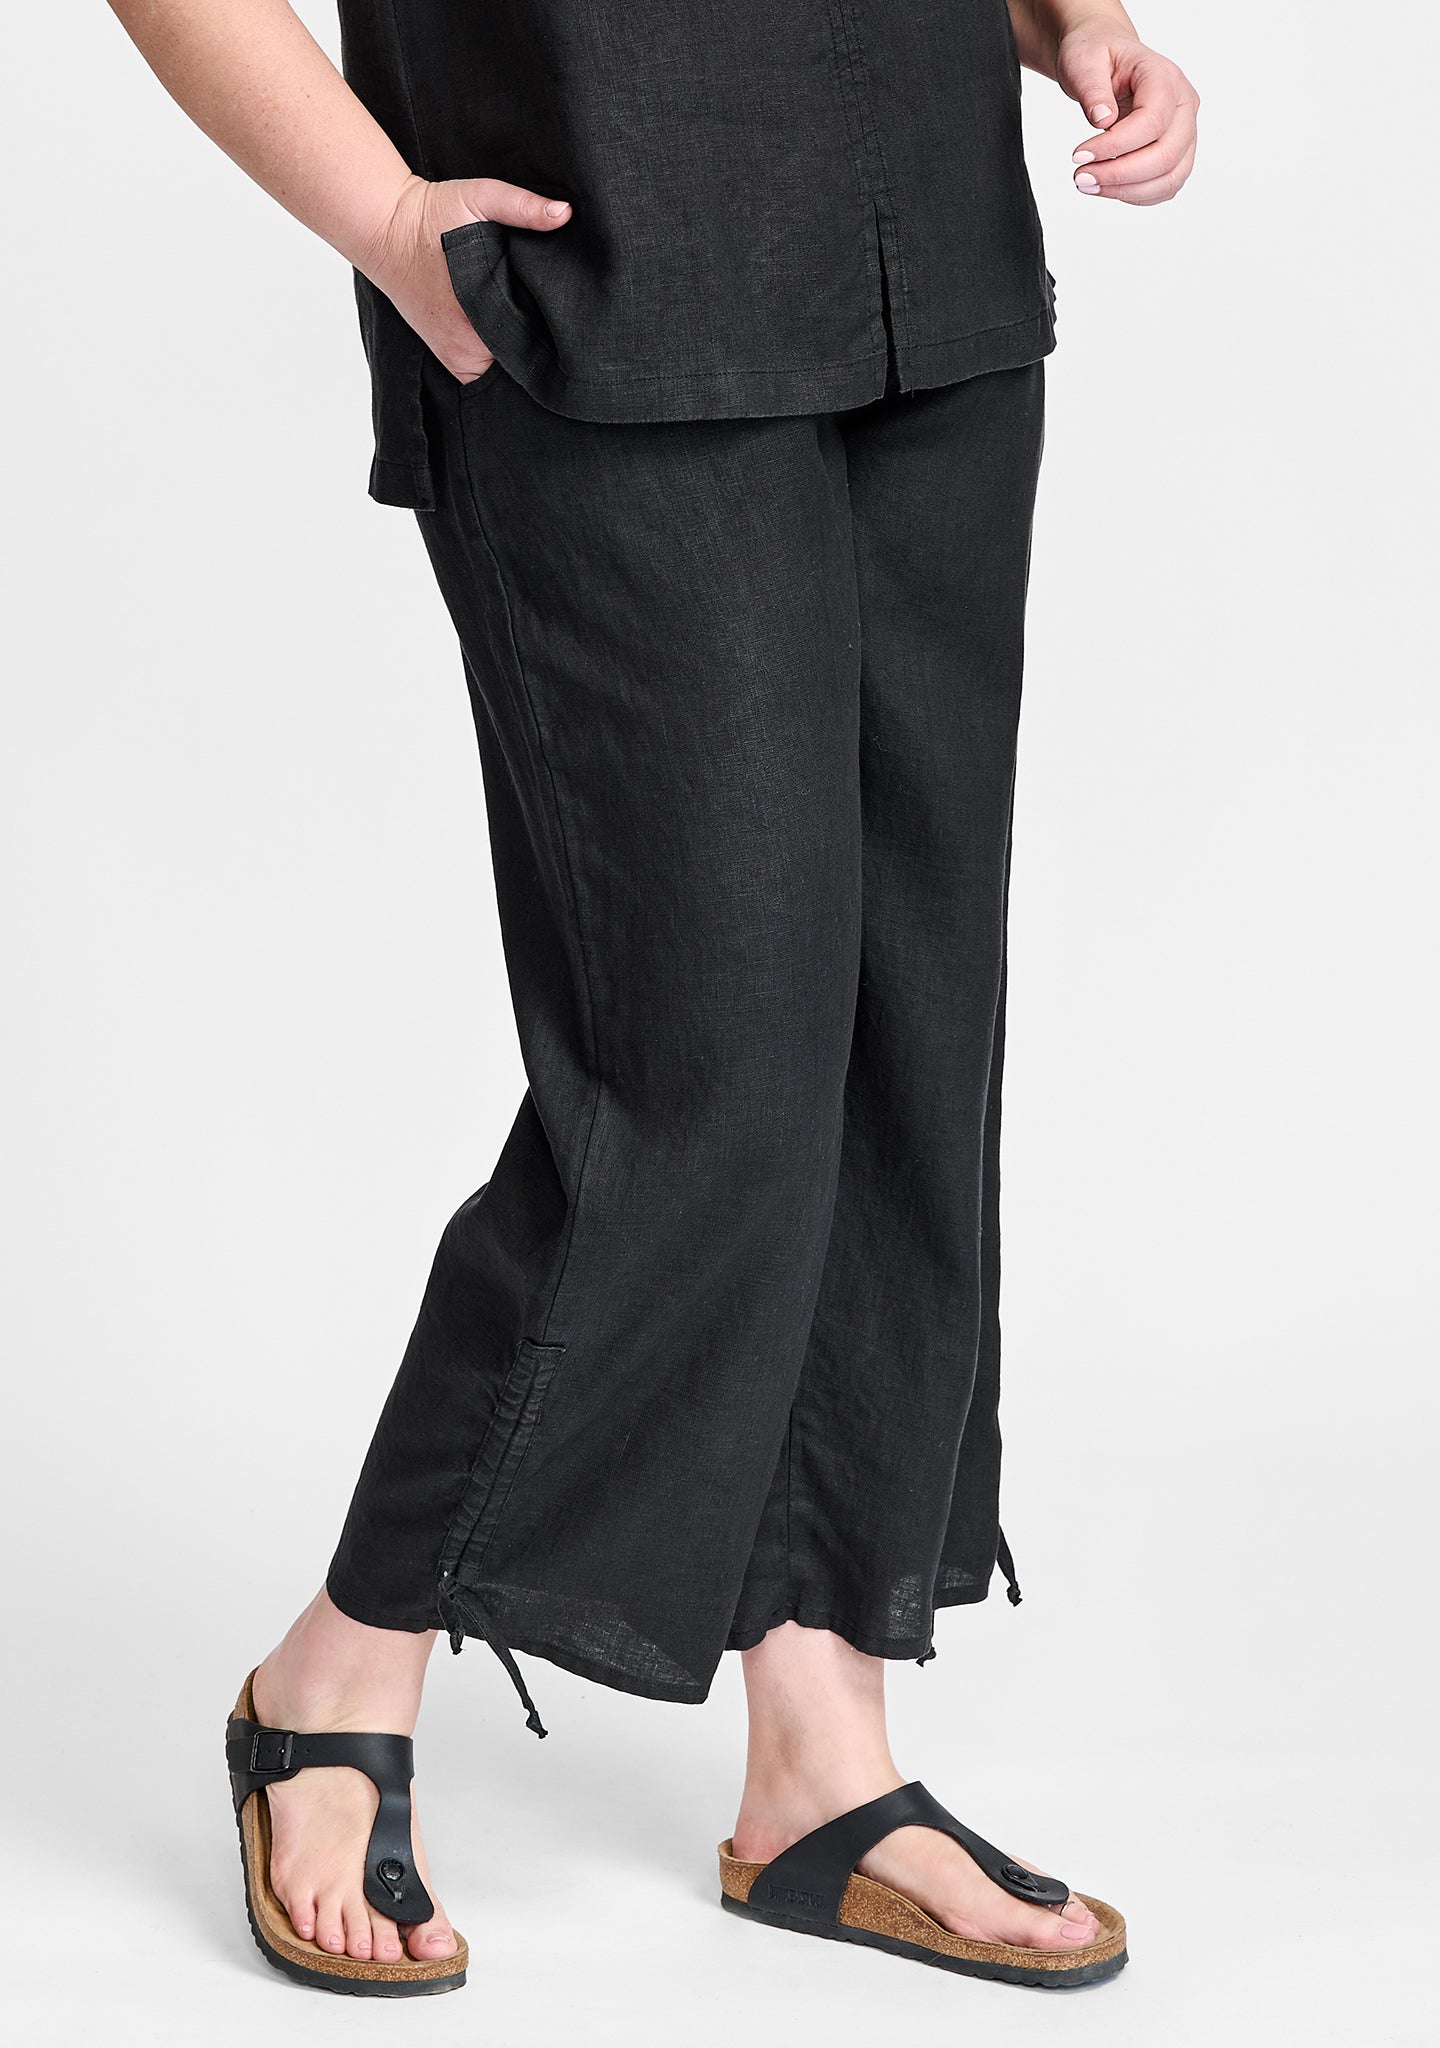 zen pant linen pants with elastic waist black